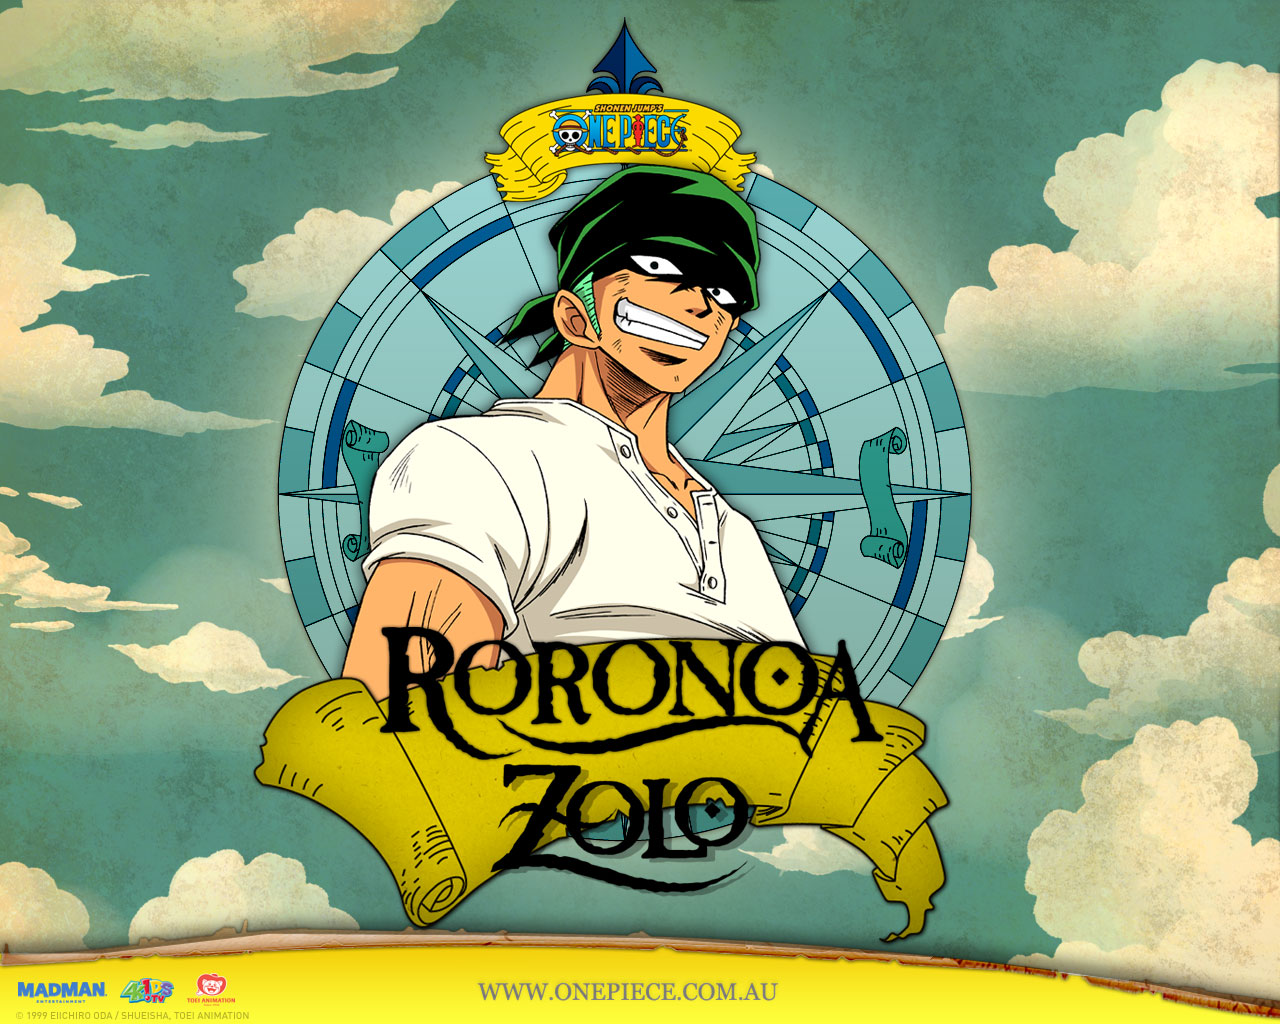 One Piece Zoro X Robin 3 by dq 004